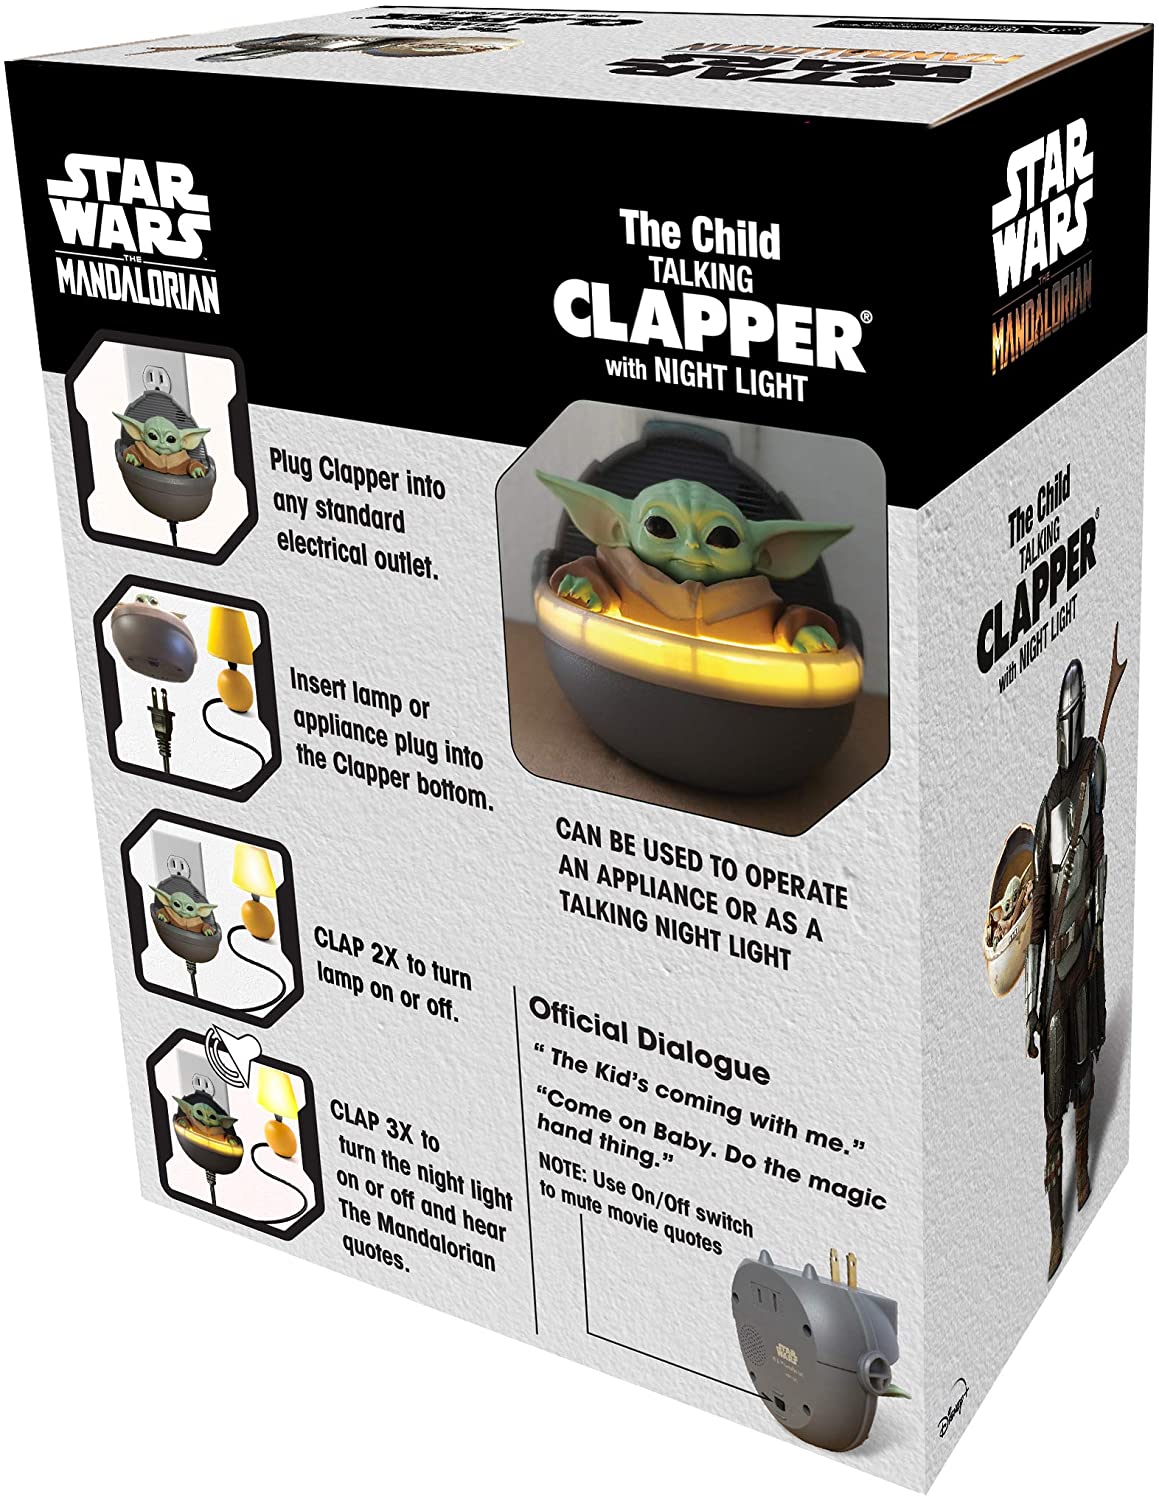 The Child Clapper